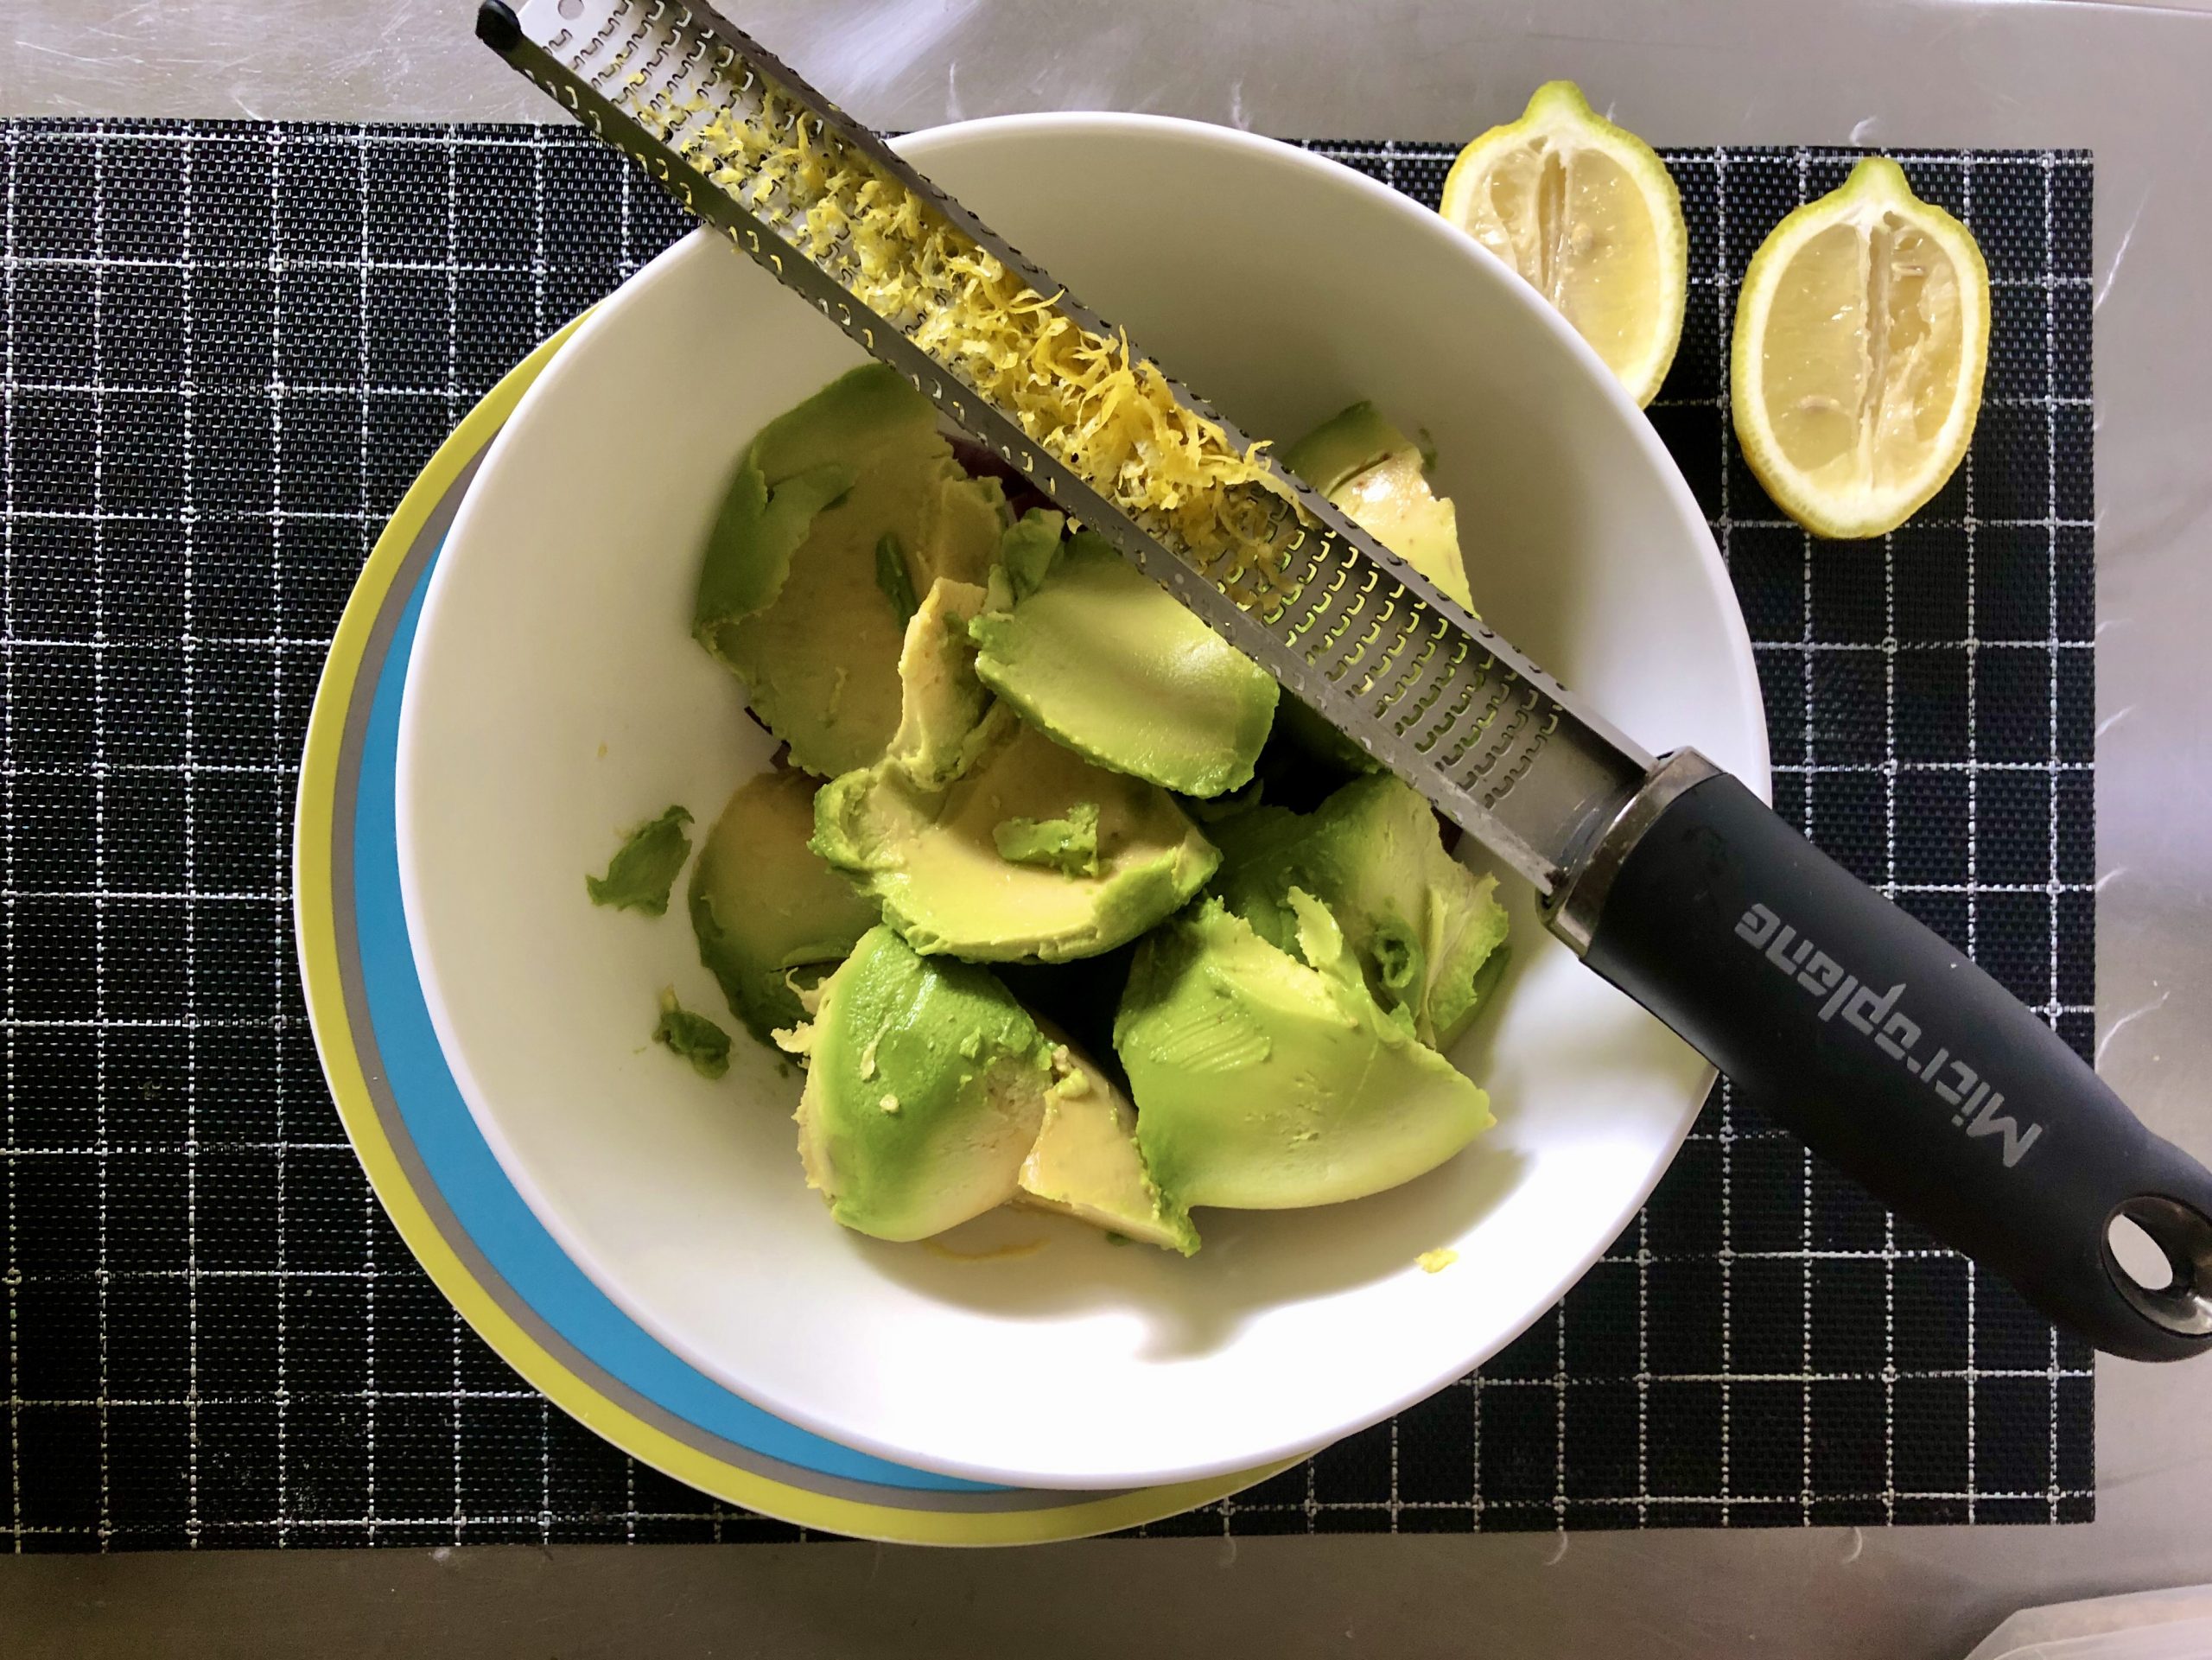 Guacamole preparation